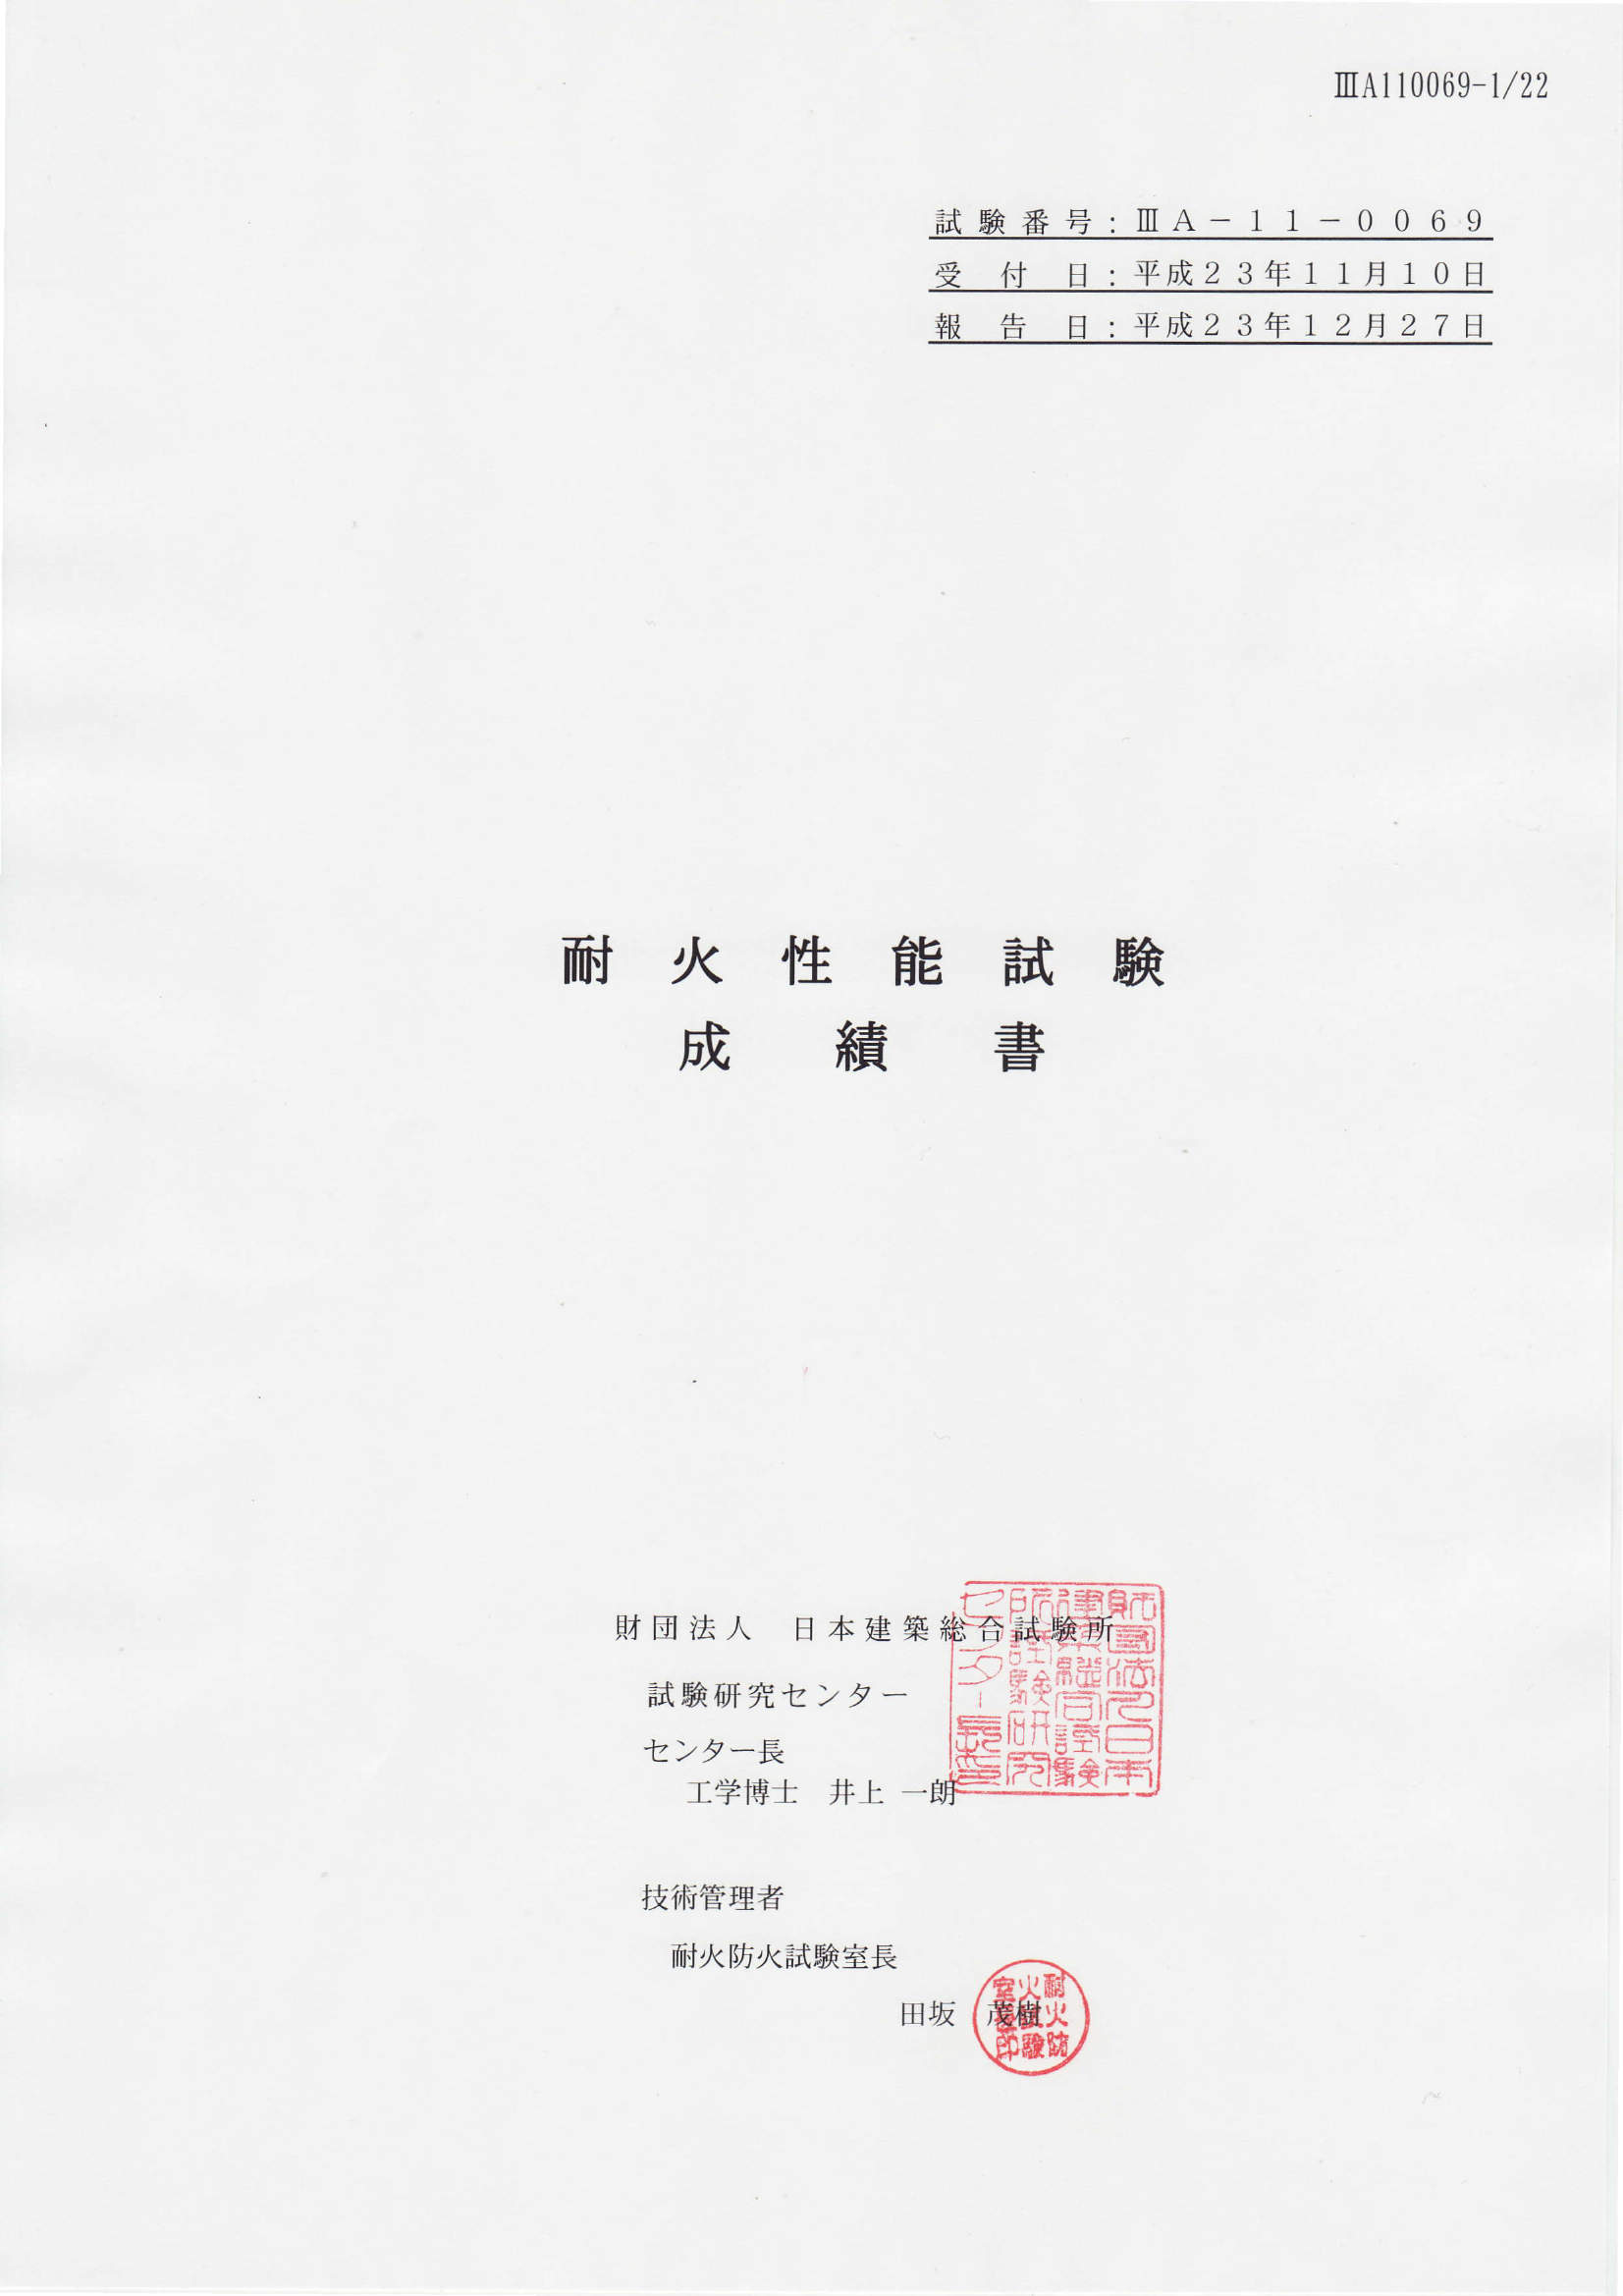 TP_外部機関証明書_20120515.pdf